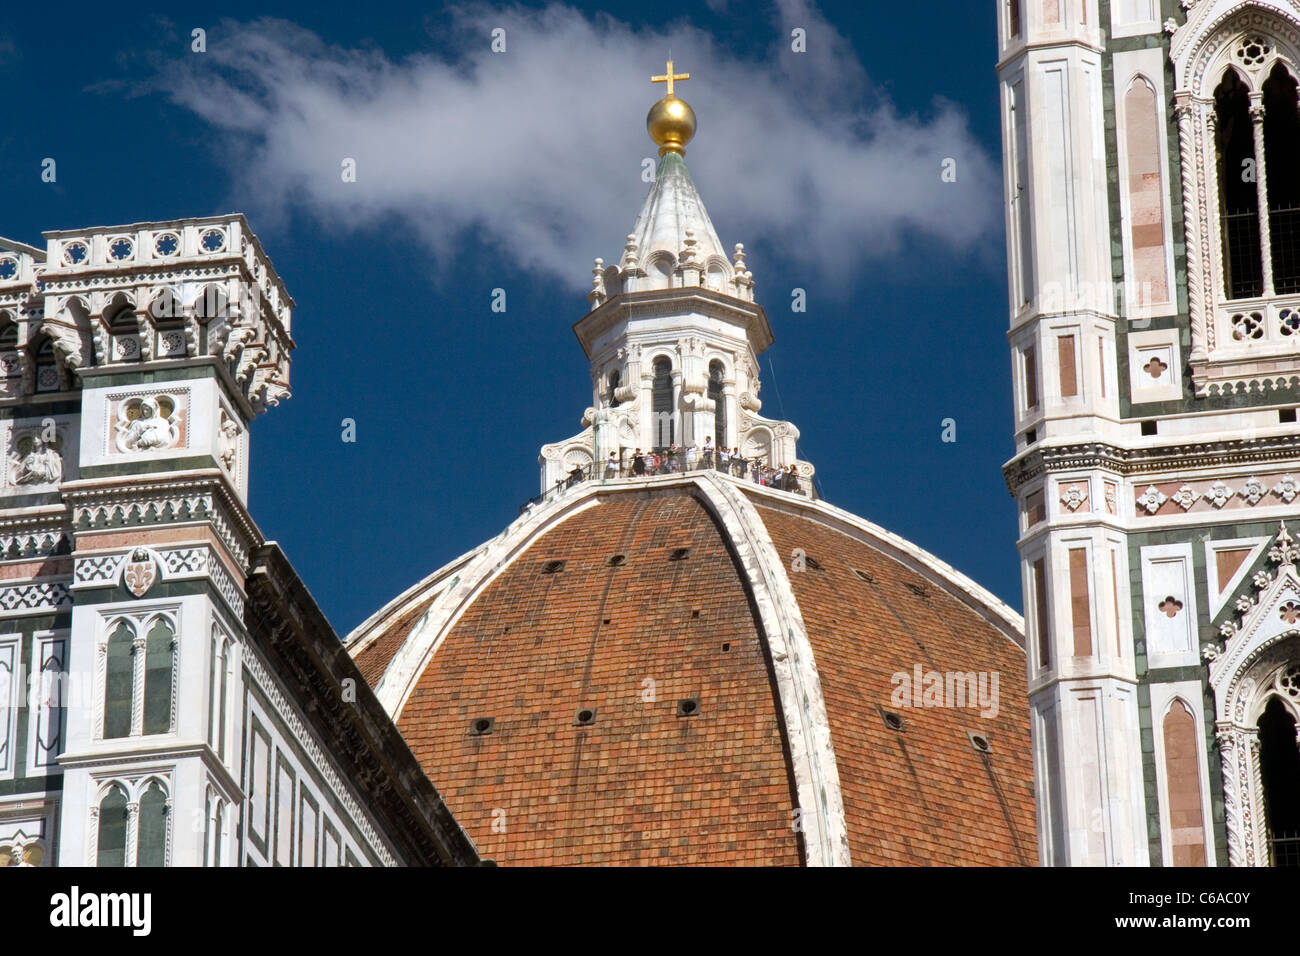 Duomo - Basilica di Santa Maria del Fiore, Baptistery and Giotto's Campanile in Florence, Italy Stock Photo